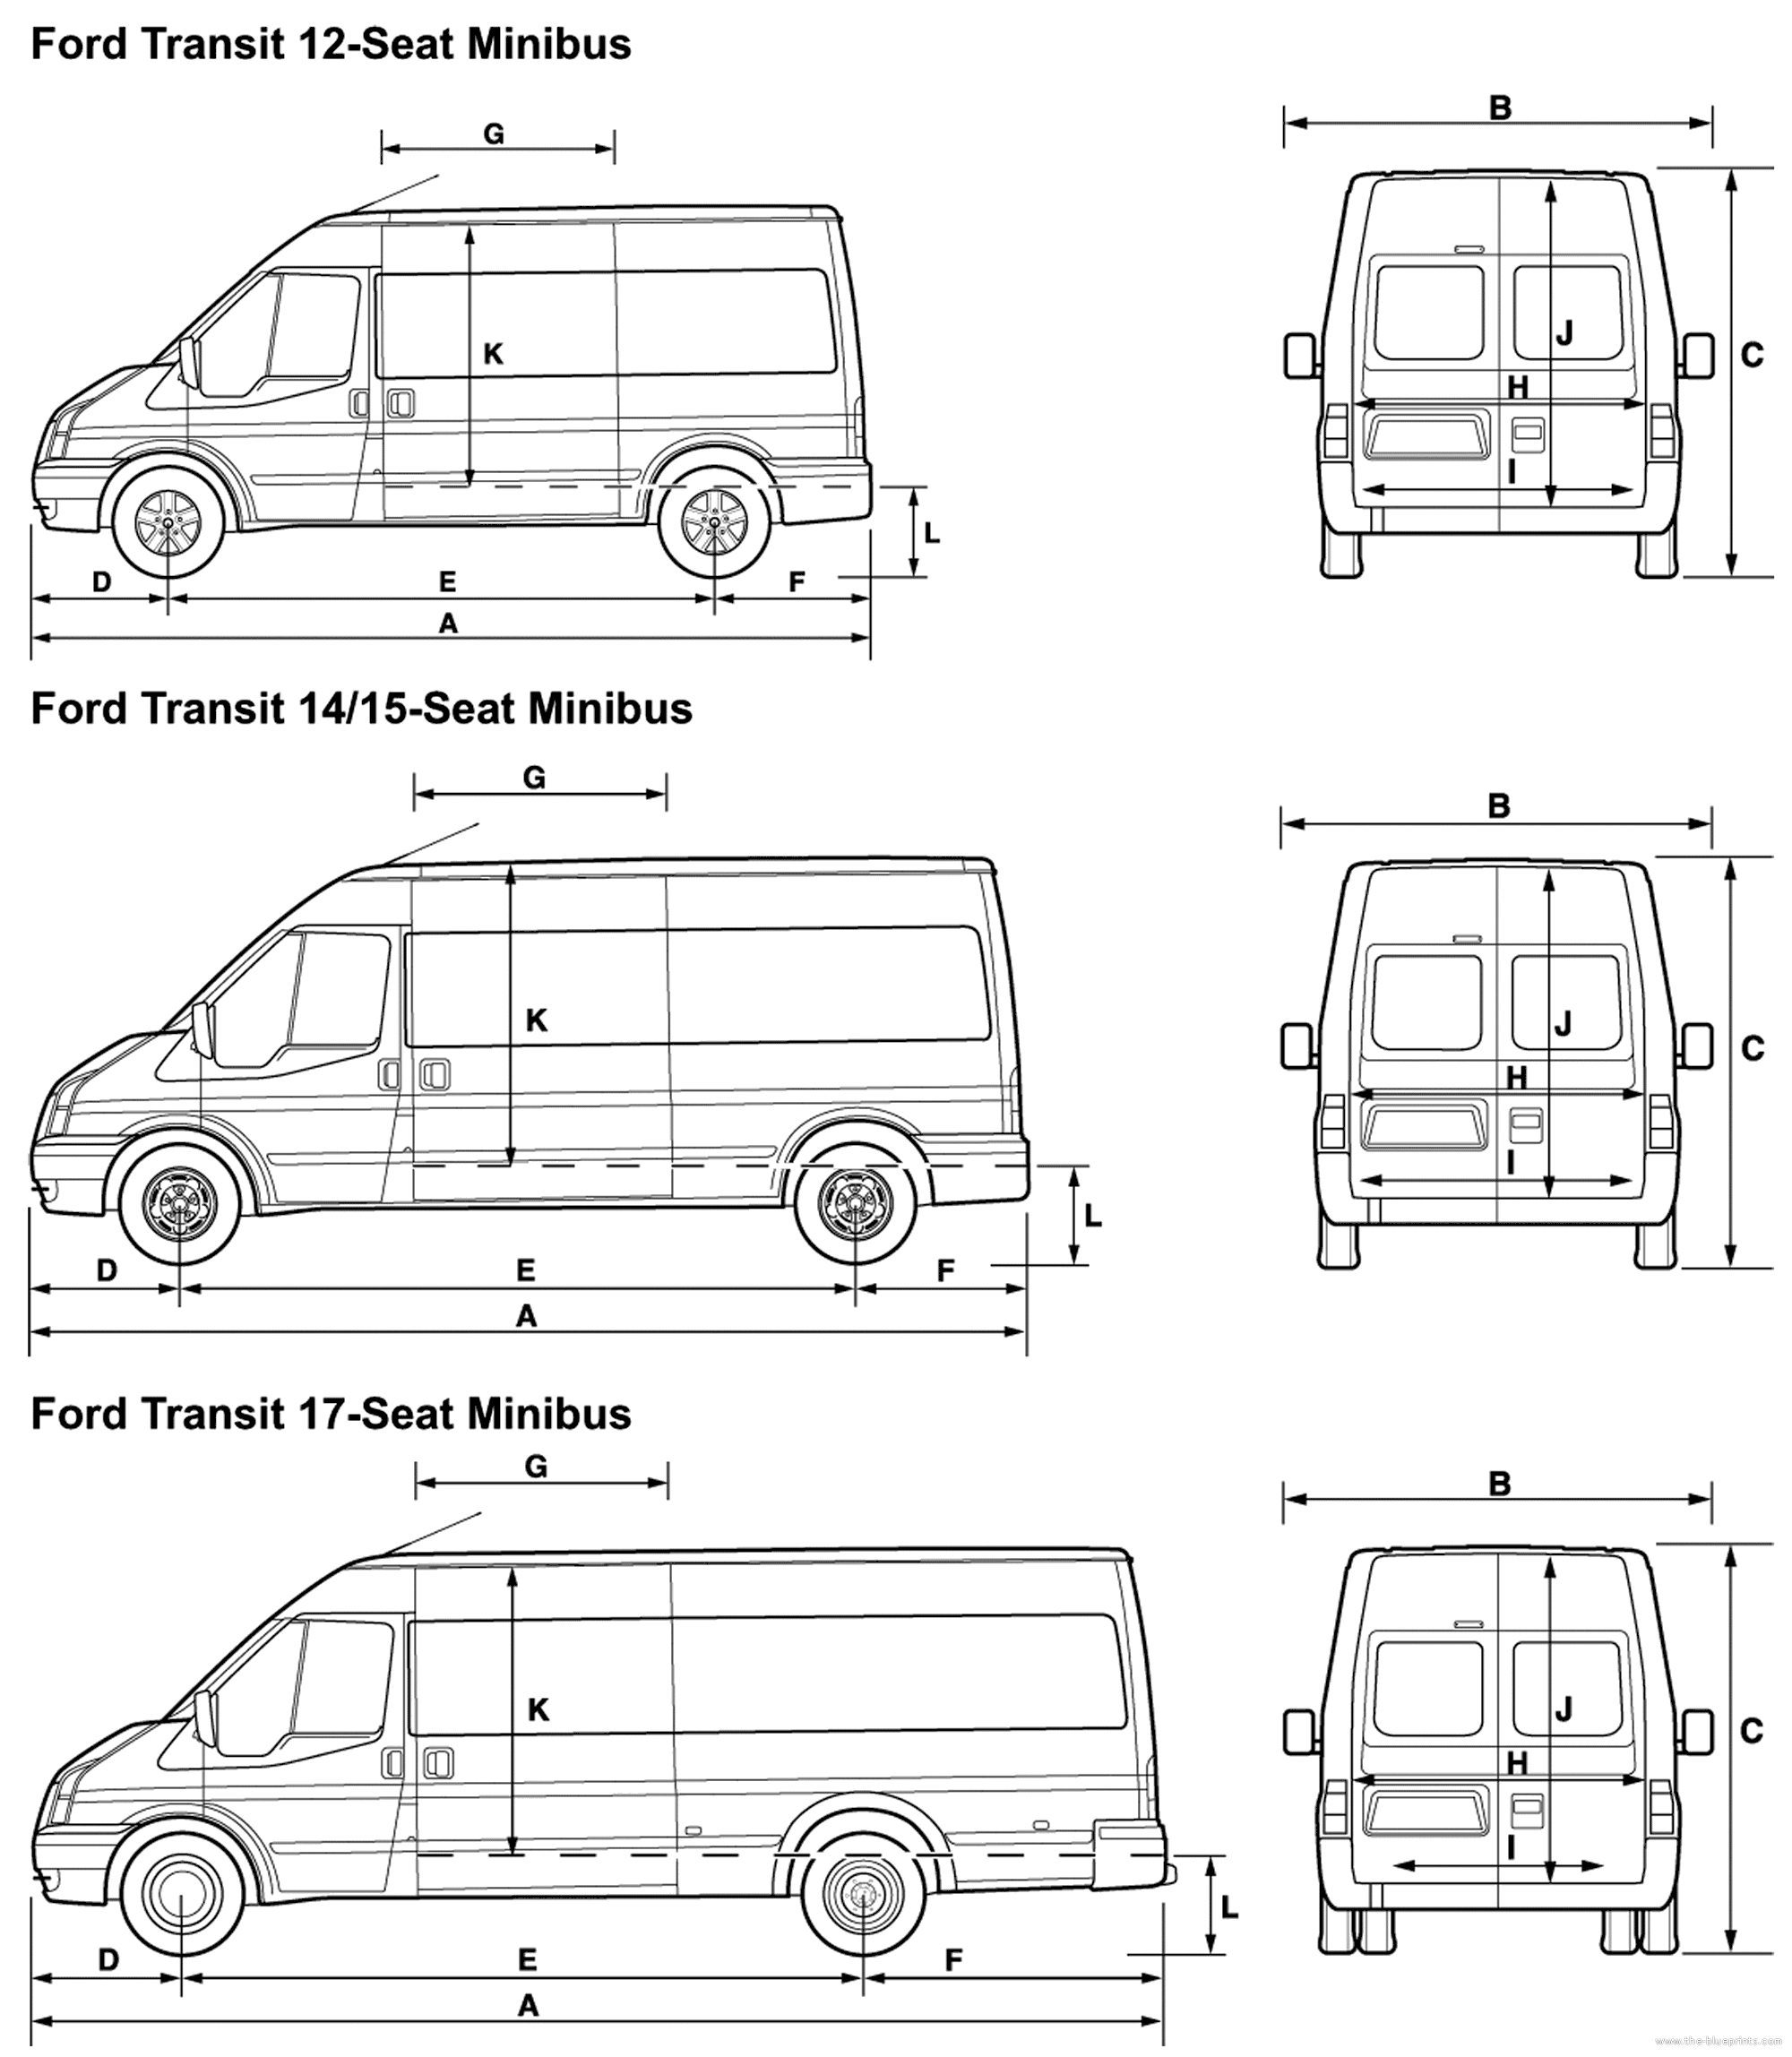 Ford transit panel van dimensions #4